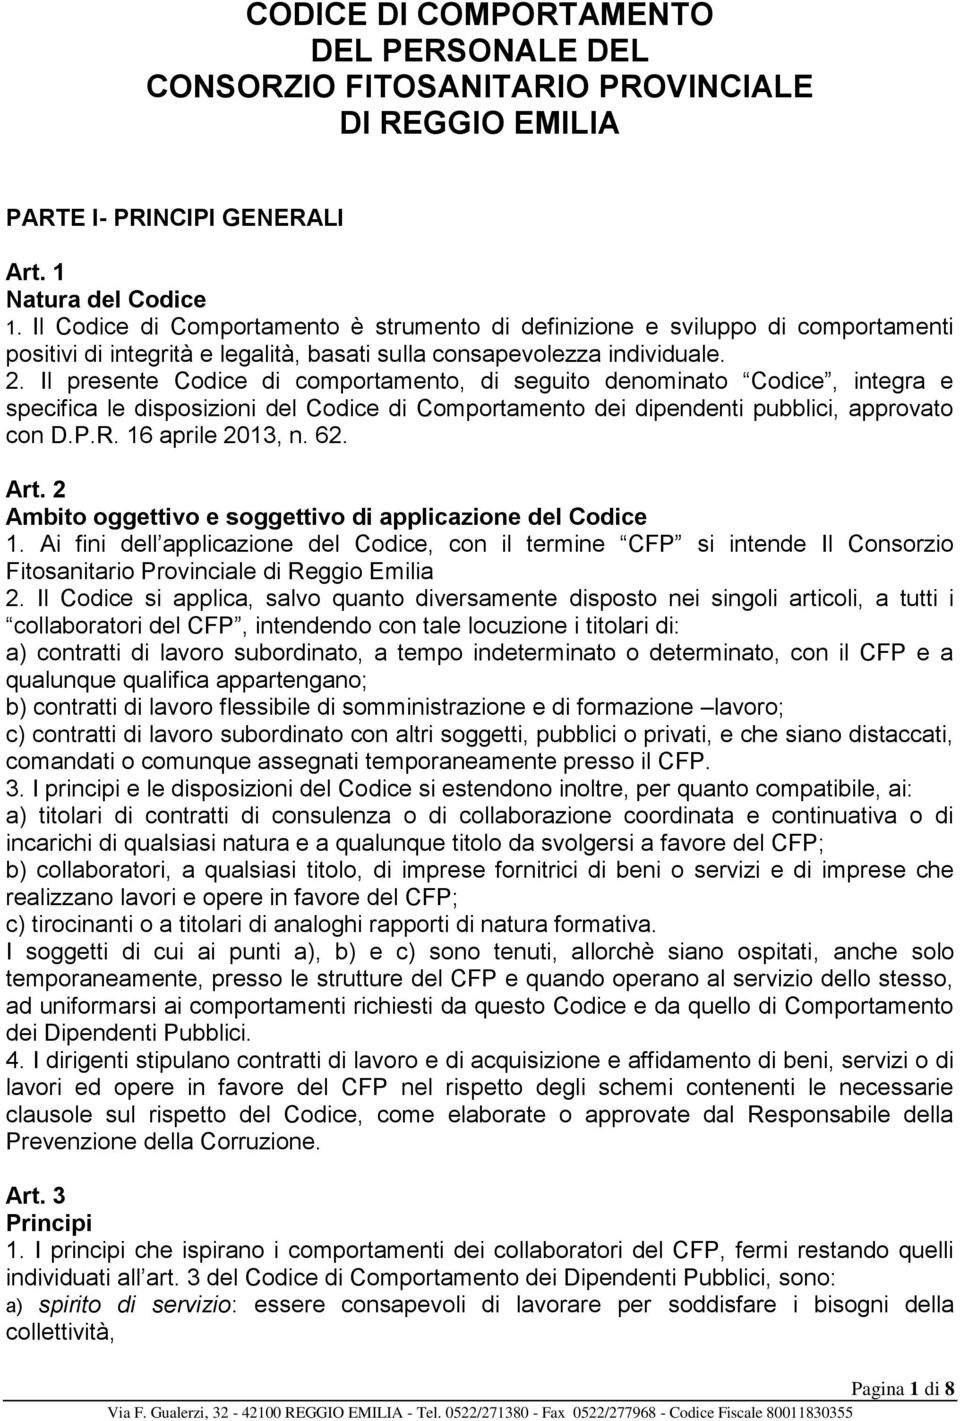 Il presente Codice di comportamento, di seguito denominato Codice, integra e specifica le disposizioni del Codice di Comportamento dei dipendenti pubblici, approvato con D.P.R. 16 aprile 2013, n. 62.